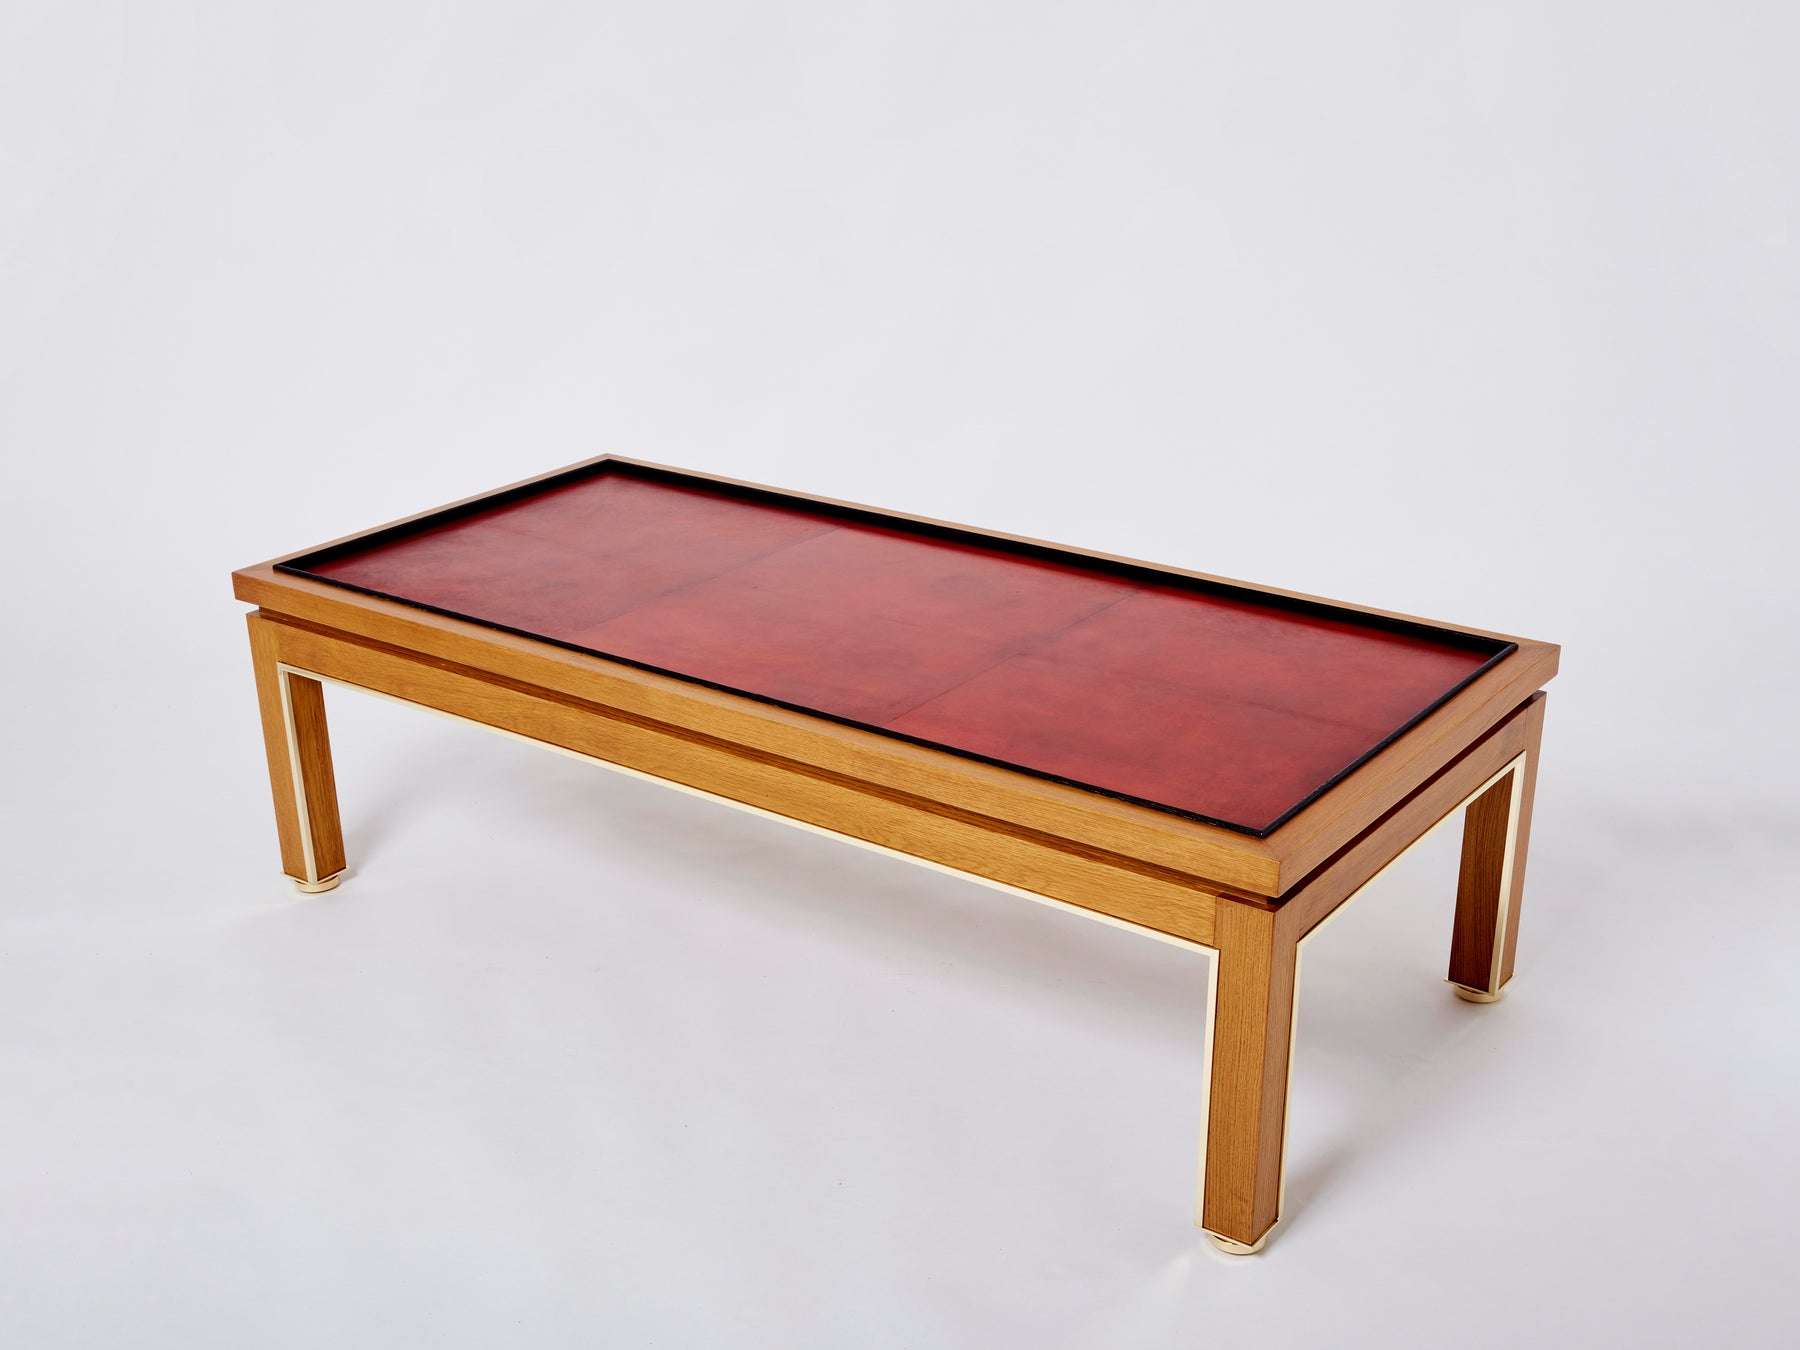 Table basse style Dupré-Lafon chêne laiton cuir par Alberto Pinto 1990